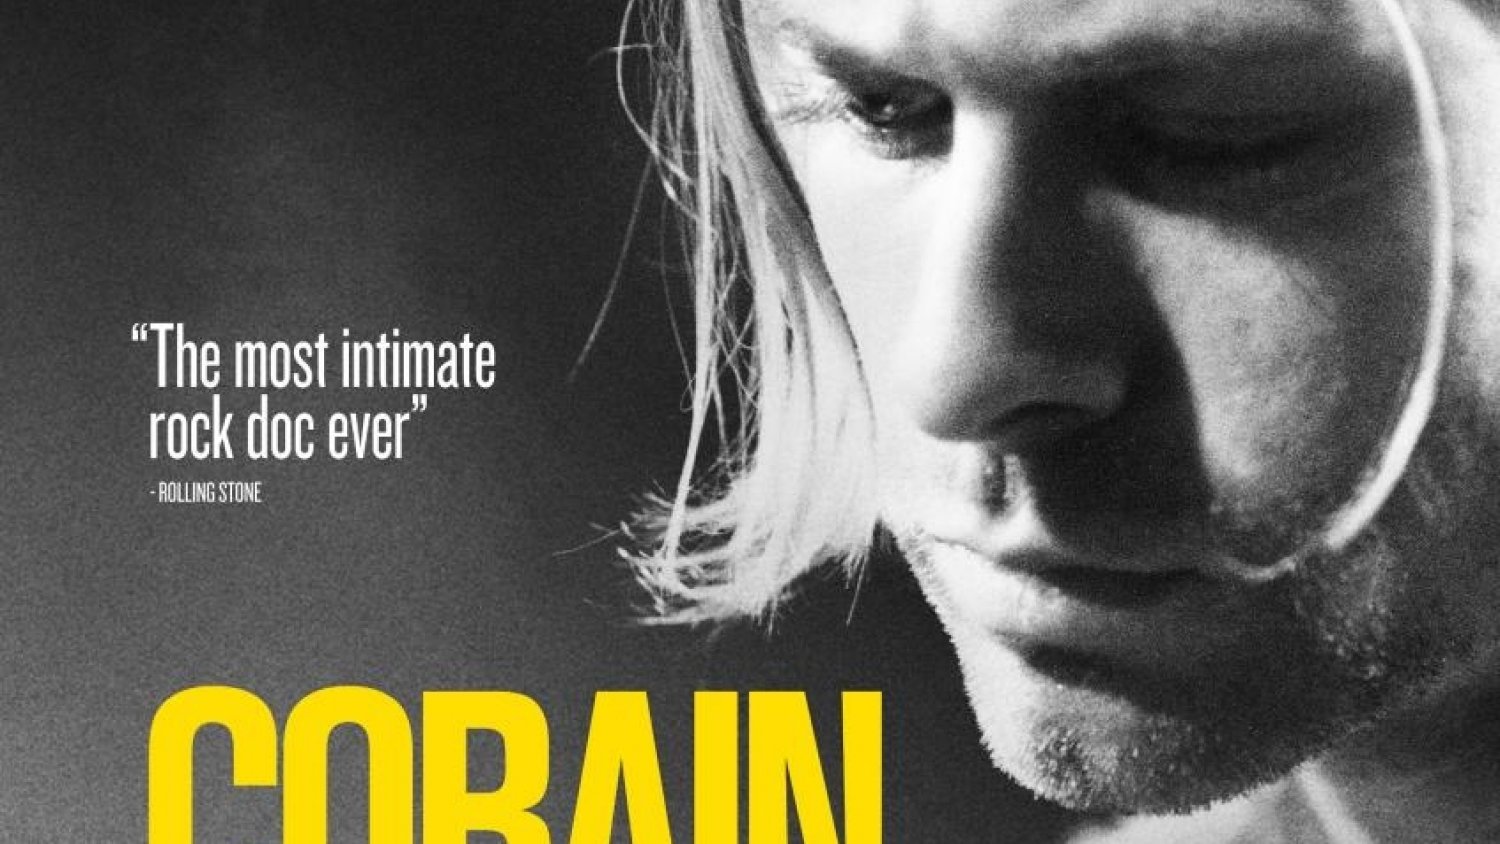 Culturama abre su ciclo documental con la proyección de 'Kurt Cobain: Montage of Heck' de Brett Morgen